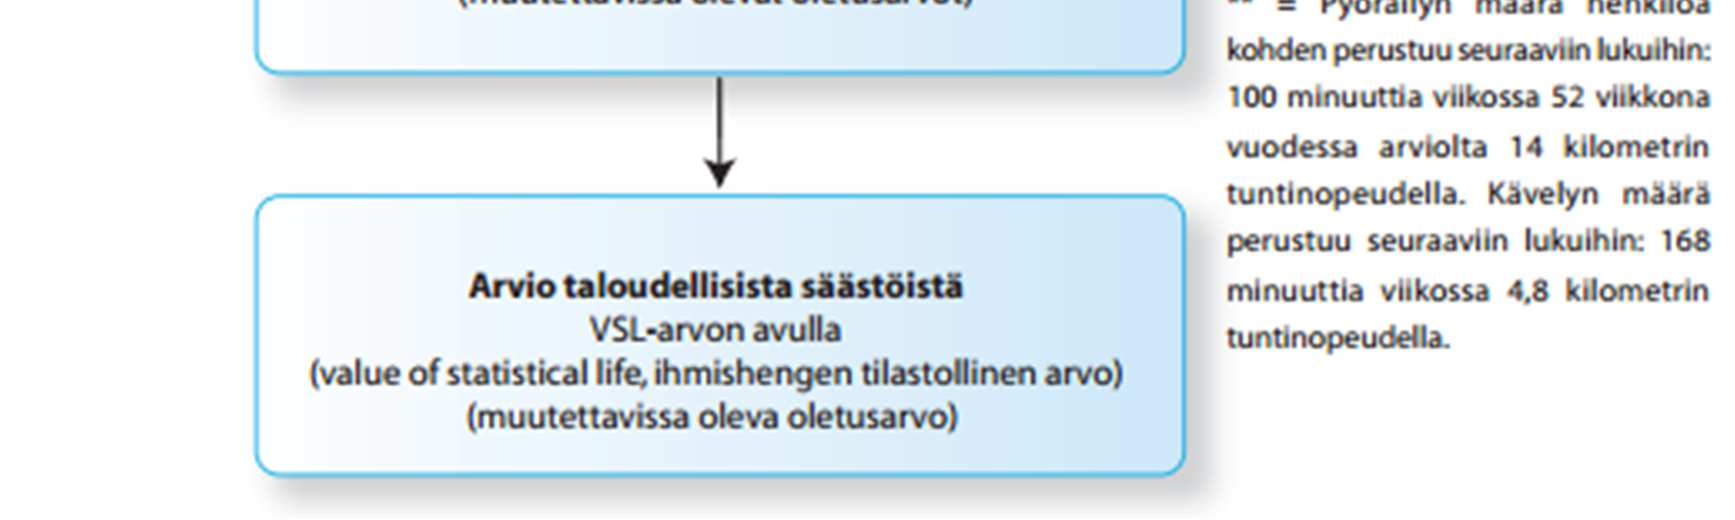 94 Kuva 49. HEAT-työkalun perustoiminta (Kunnossa kaiken ikää -ohjelma 2015, s. 21).